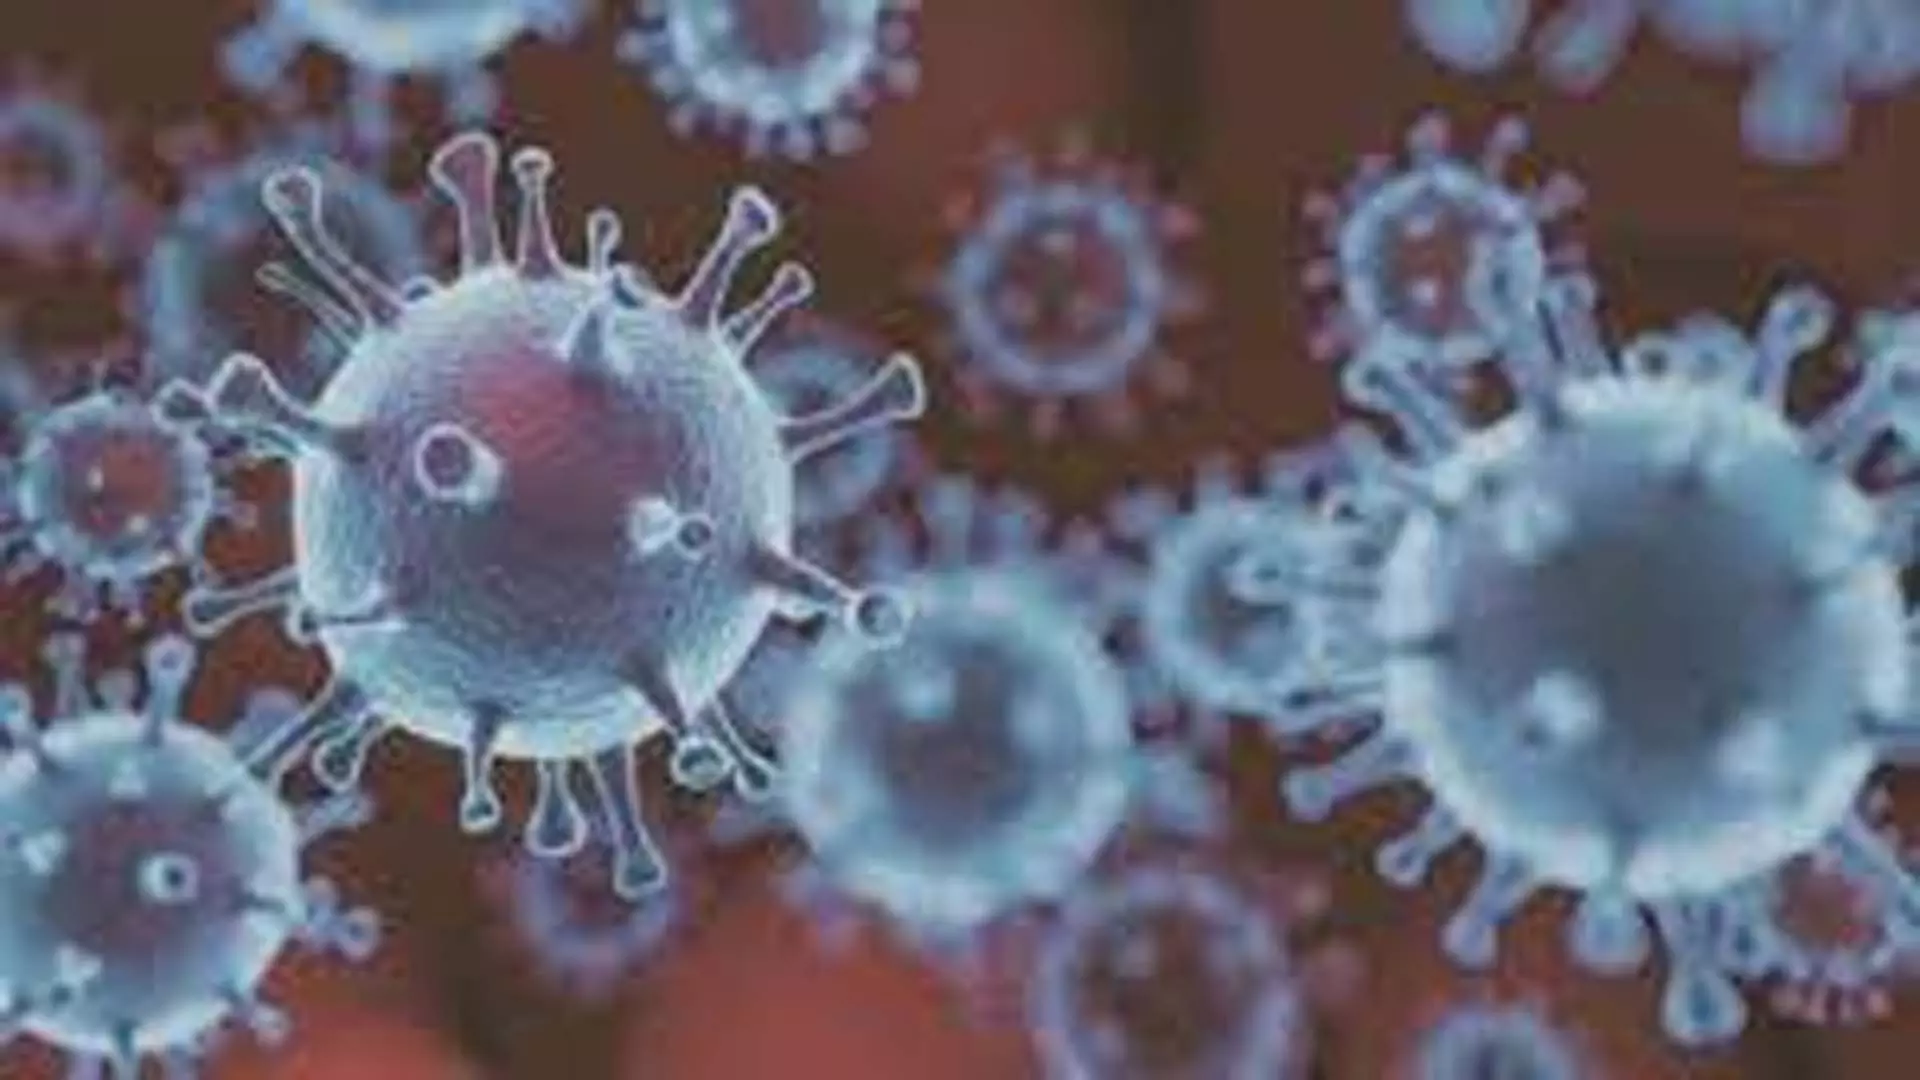 मानव शरीर में एक साल से अधिक समय तक रह सकता है कोविड वायरस